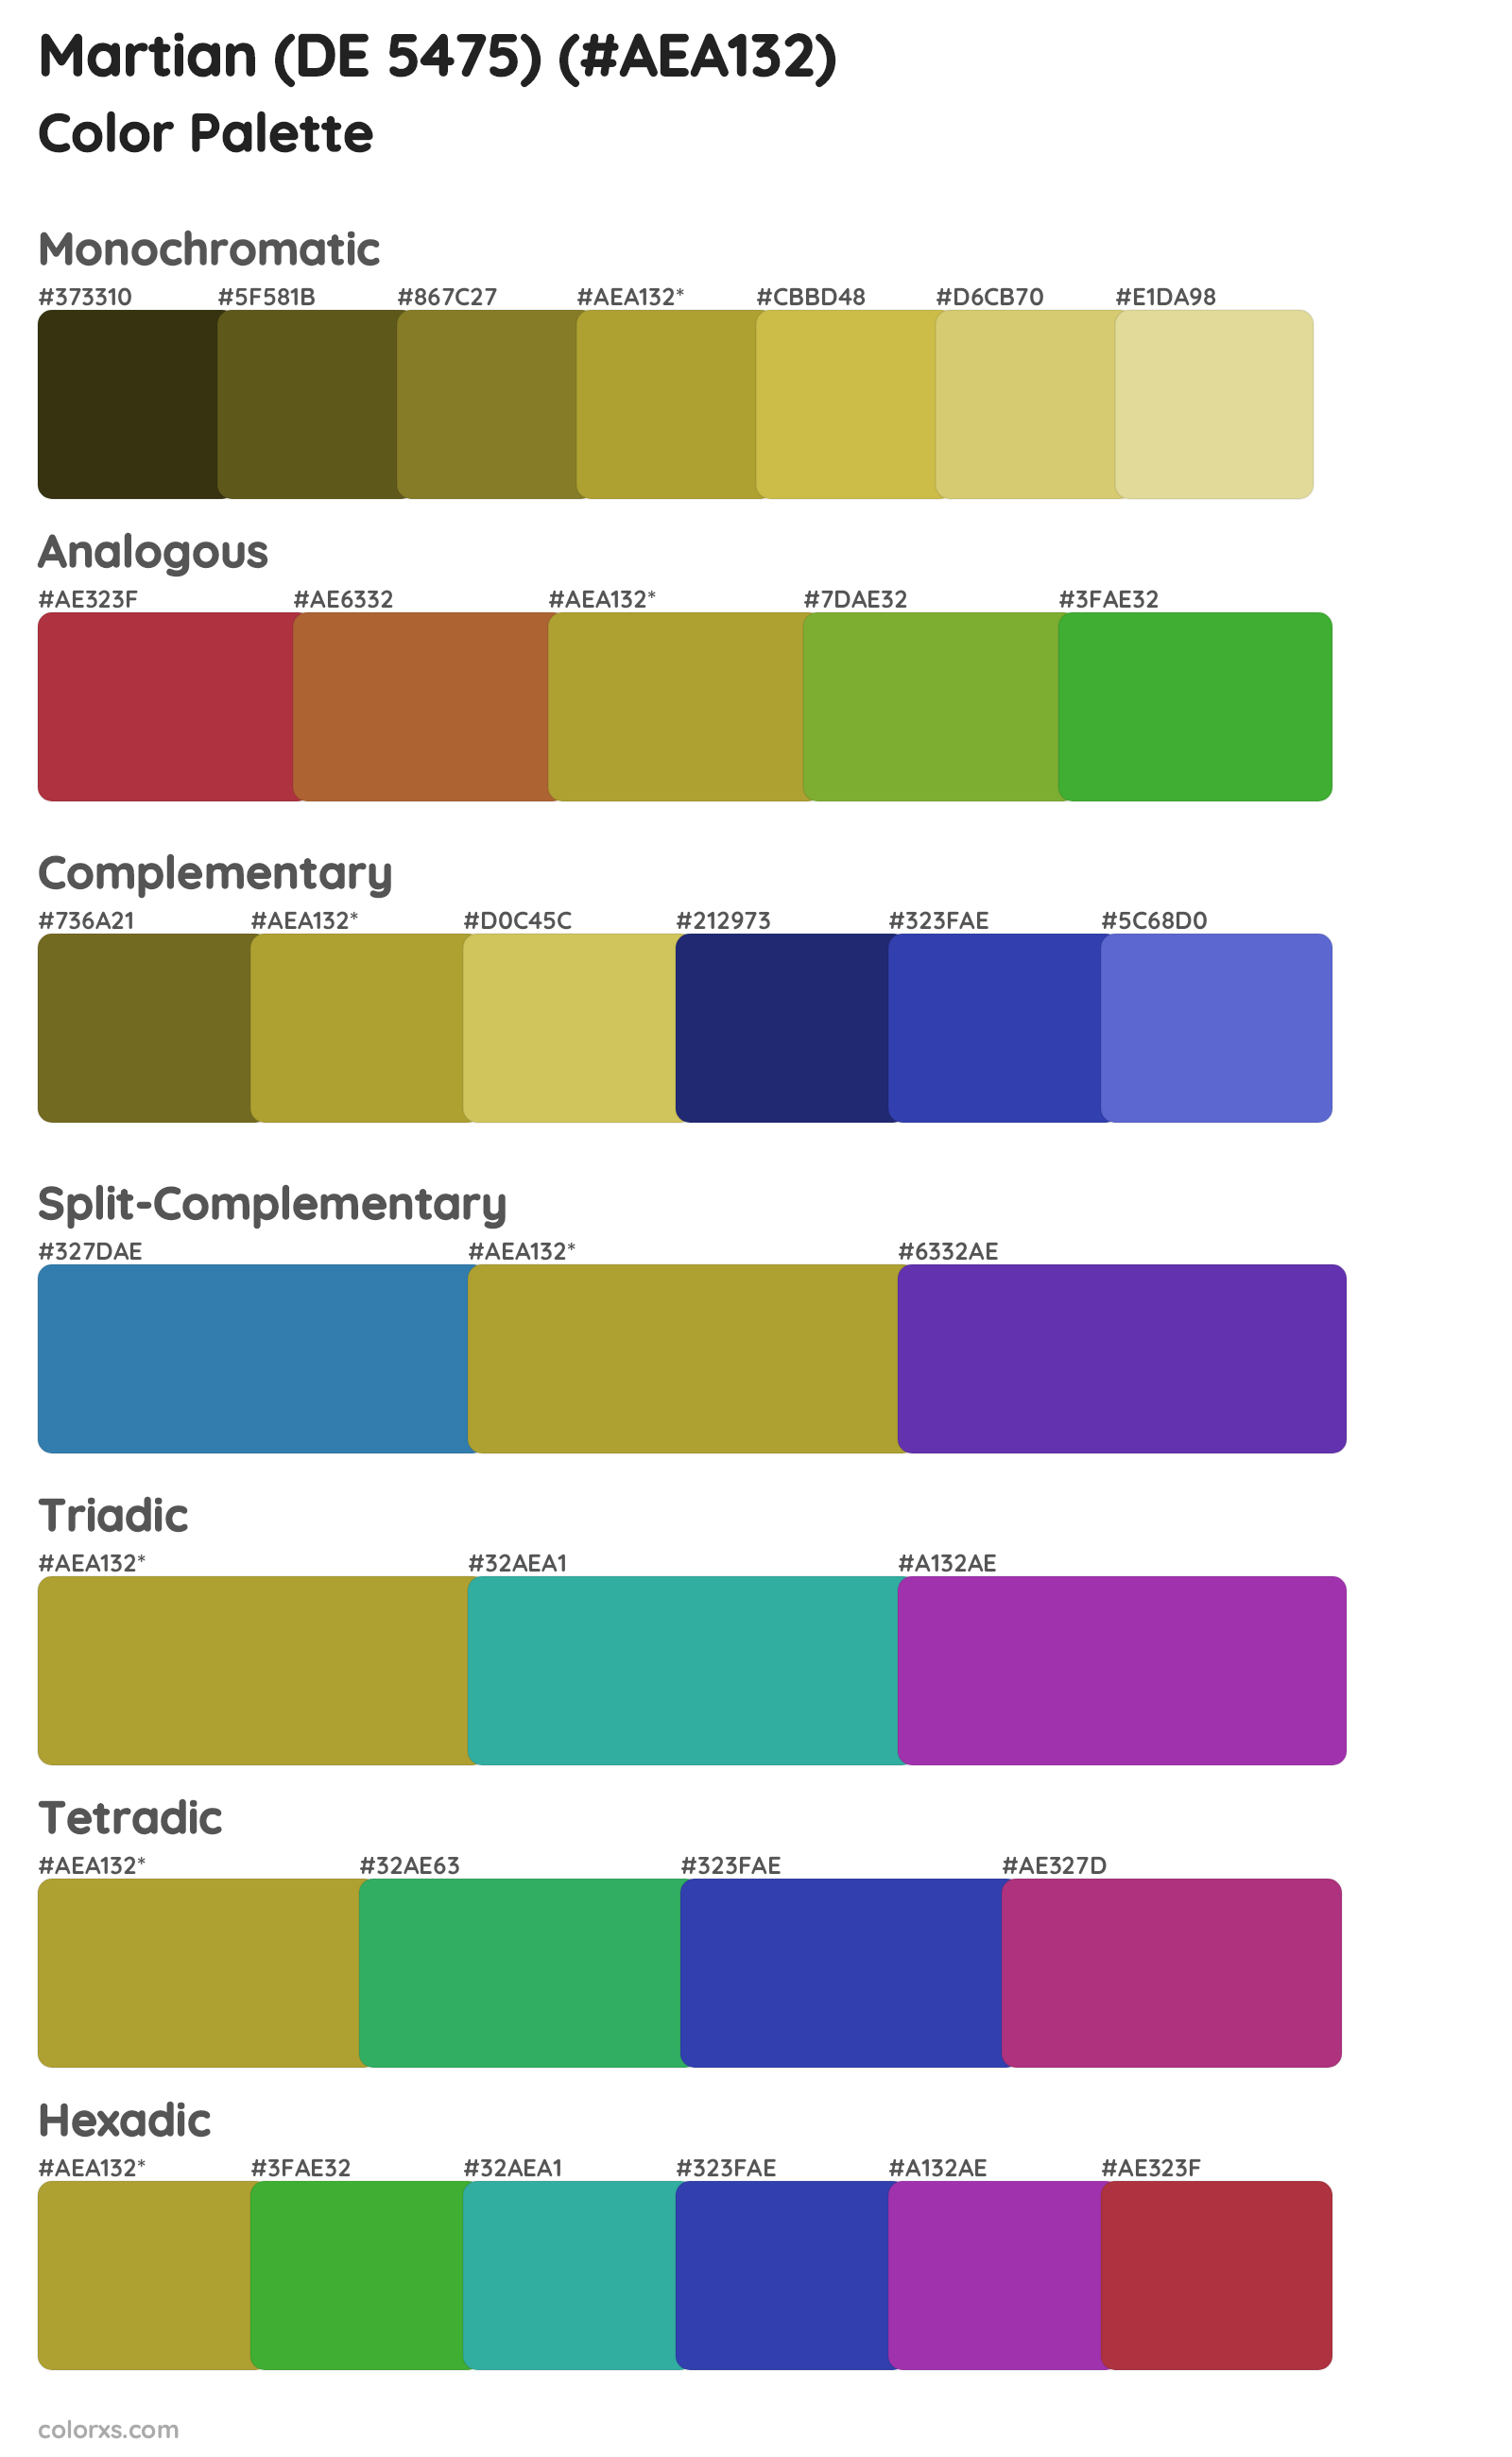 Martian (DE 5475) Color Scheme Palettes